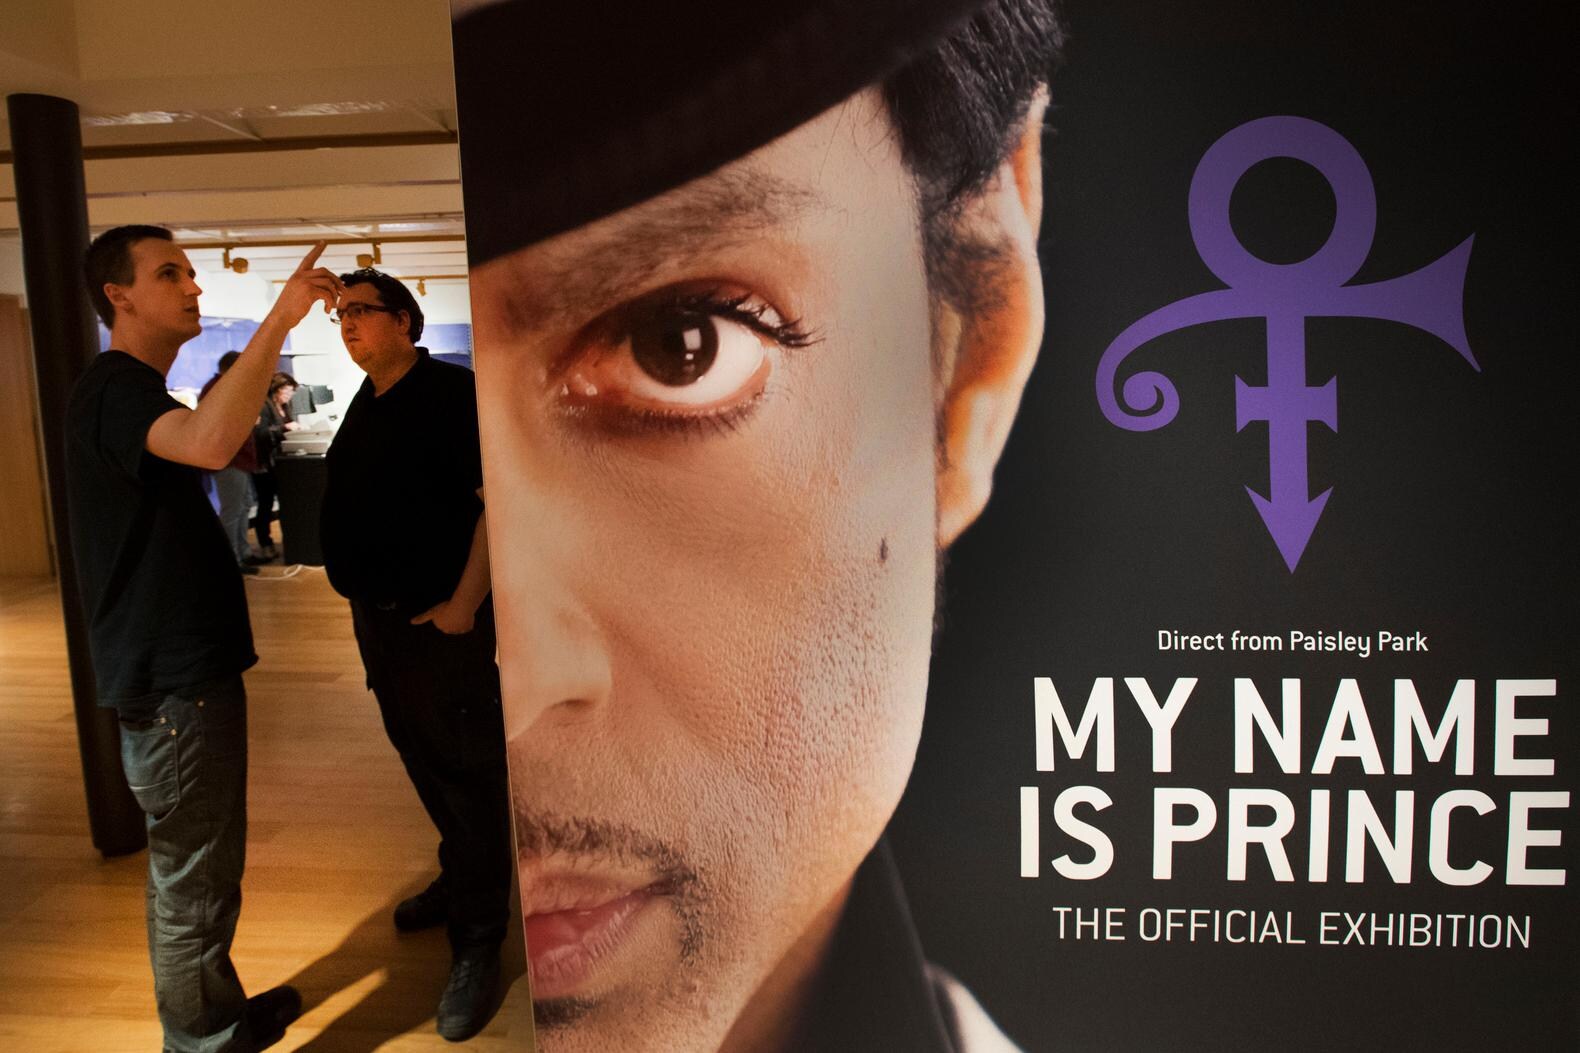 Prince in de Beurs van Berlage: Dichter bij kan niet meer